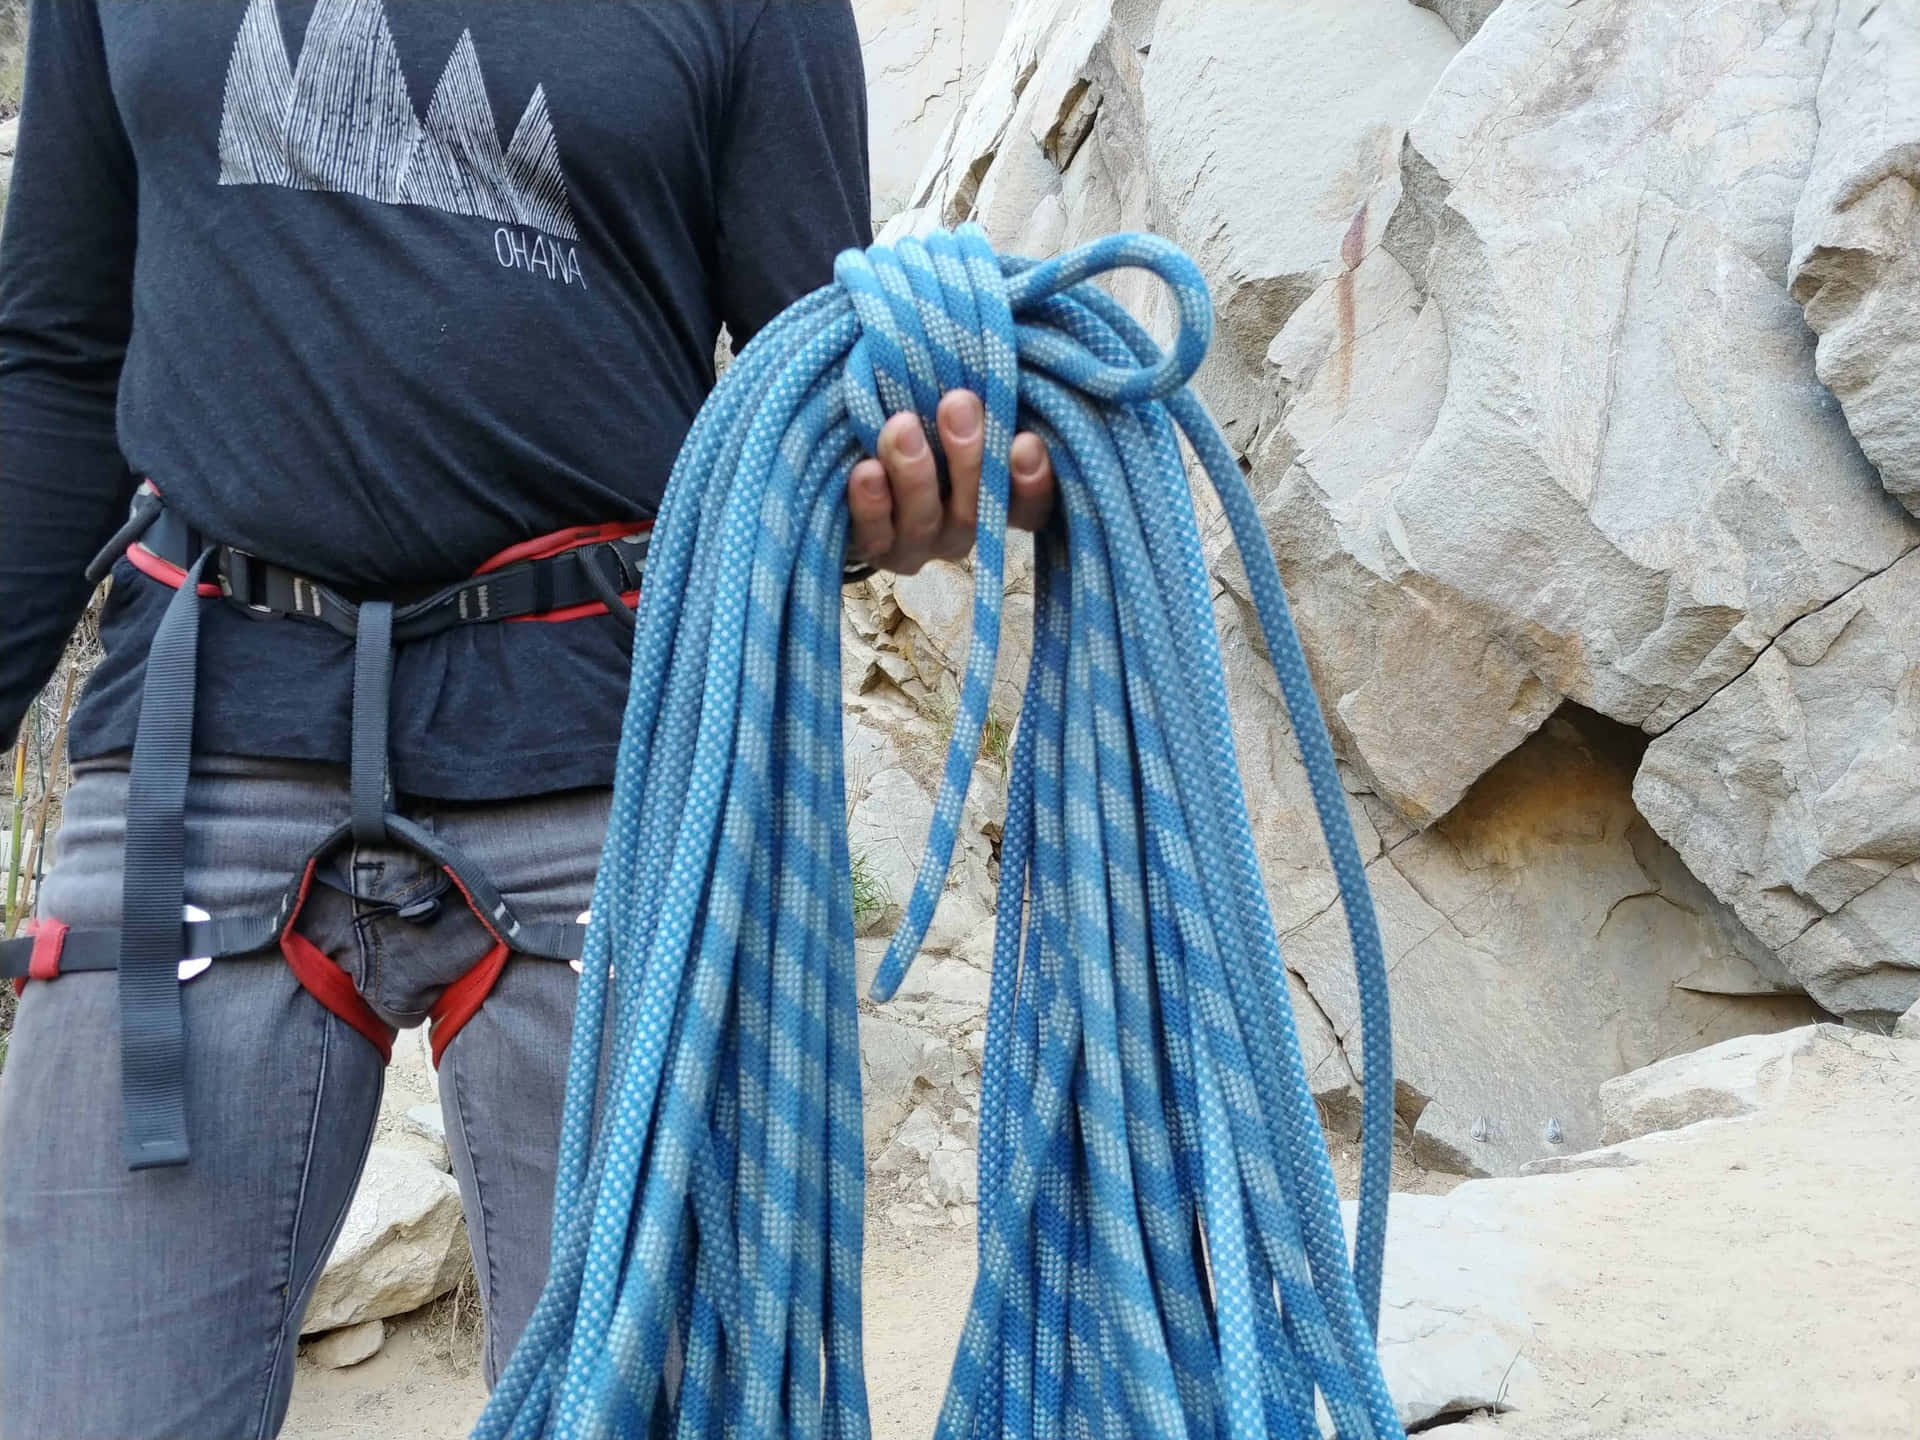 Imagende Un Hombre Sosteniendo Una Cuerda Azul.